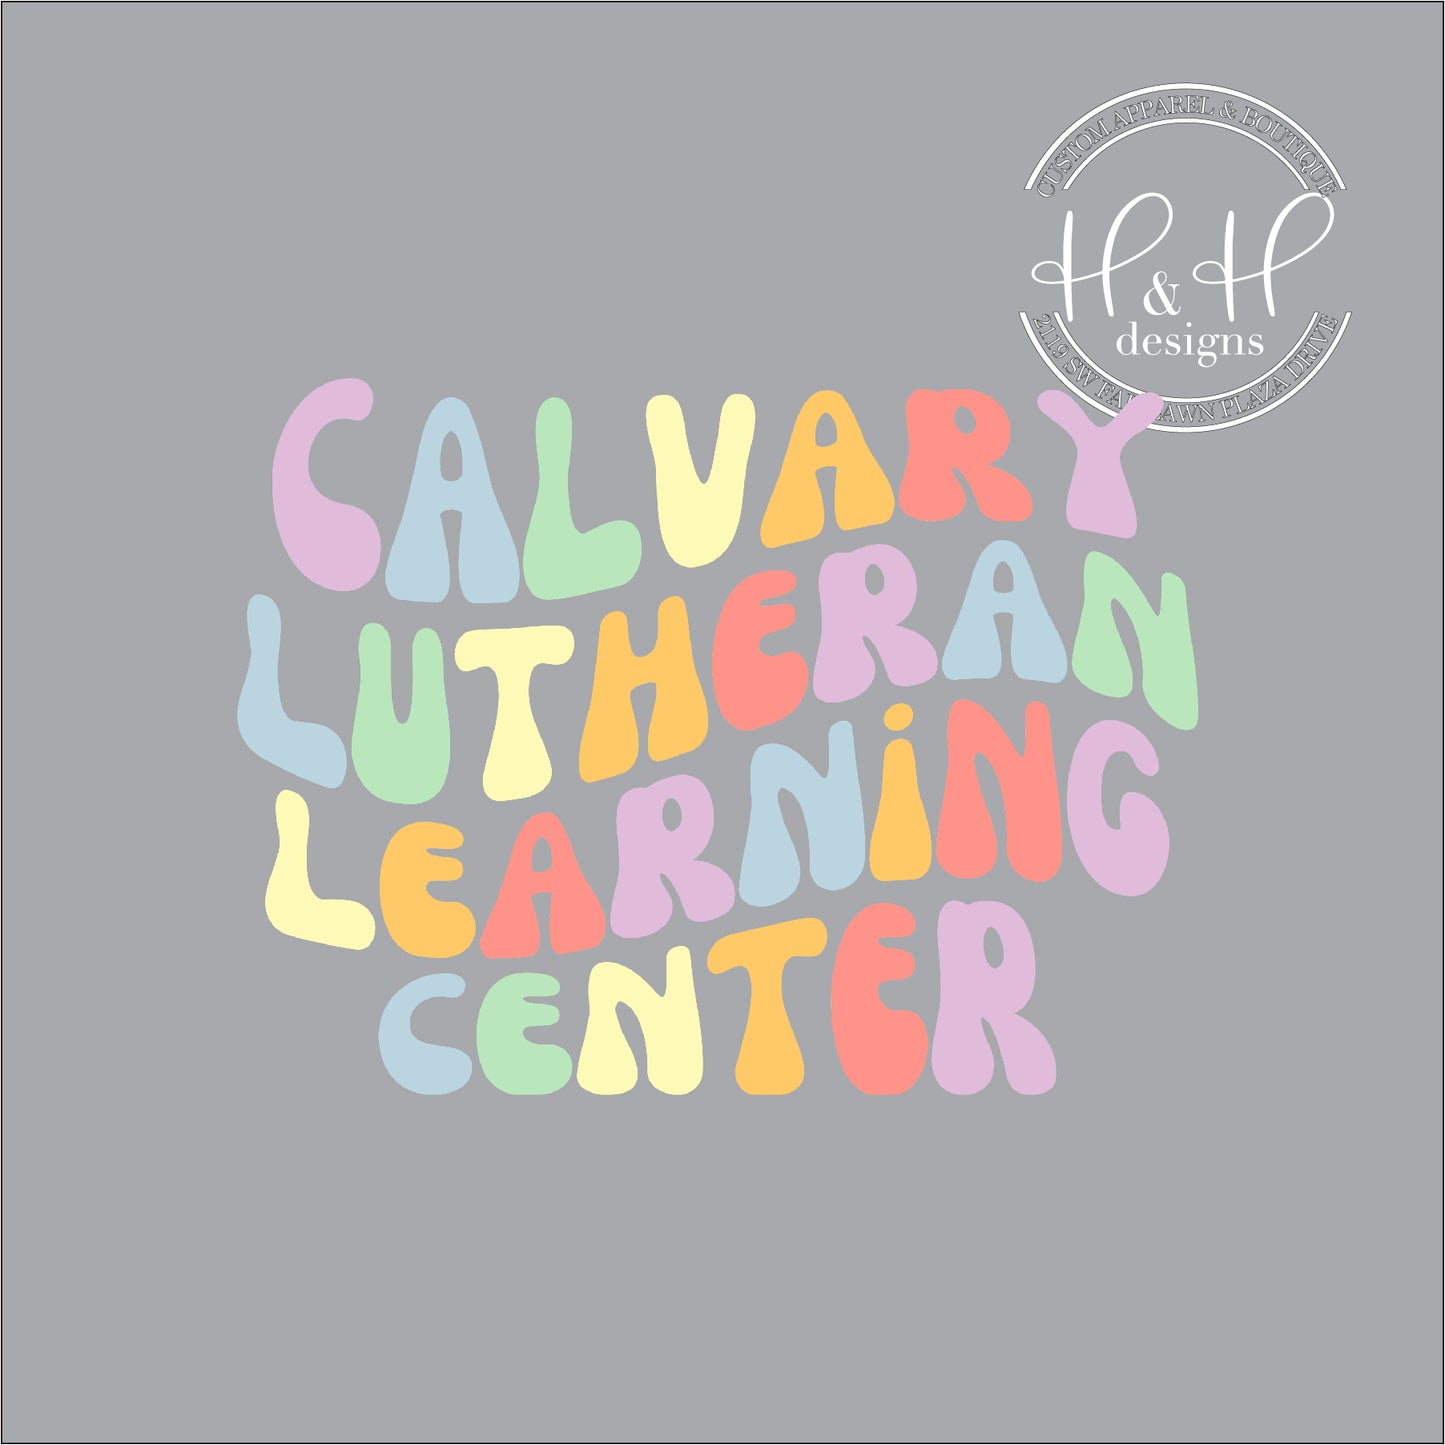 Calvary Lutheran Retro Wavy - Calvary Lutheran Early Learning Center